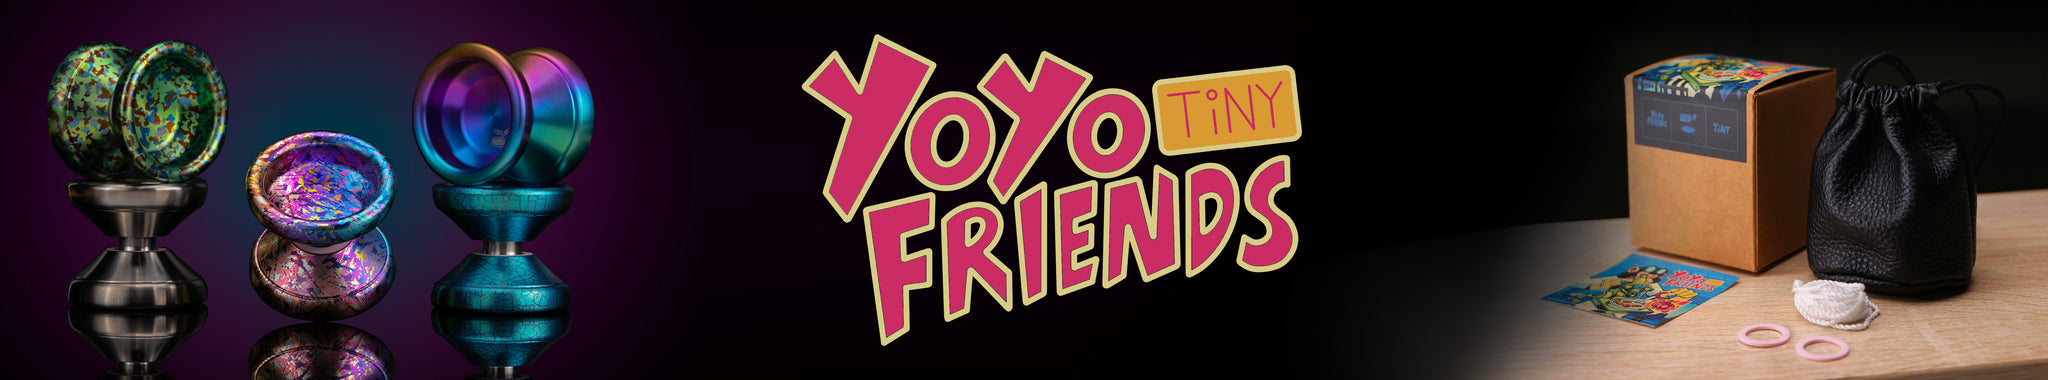 TiNY by yoyofriends